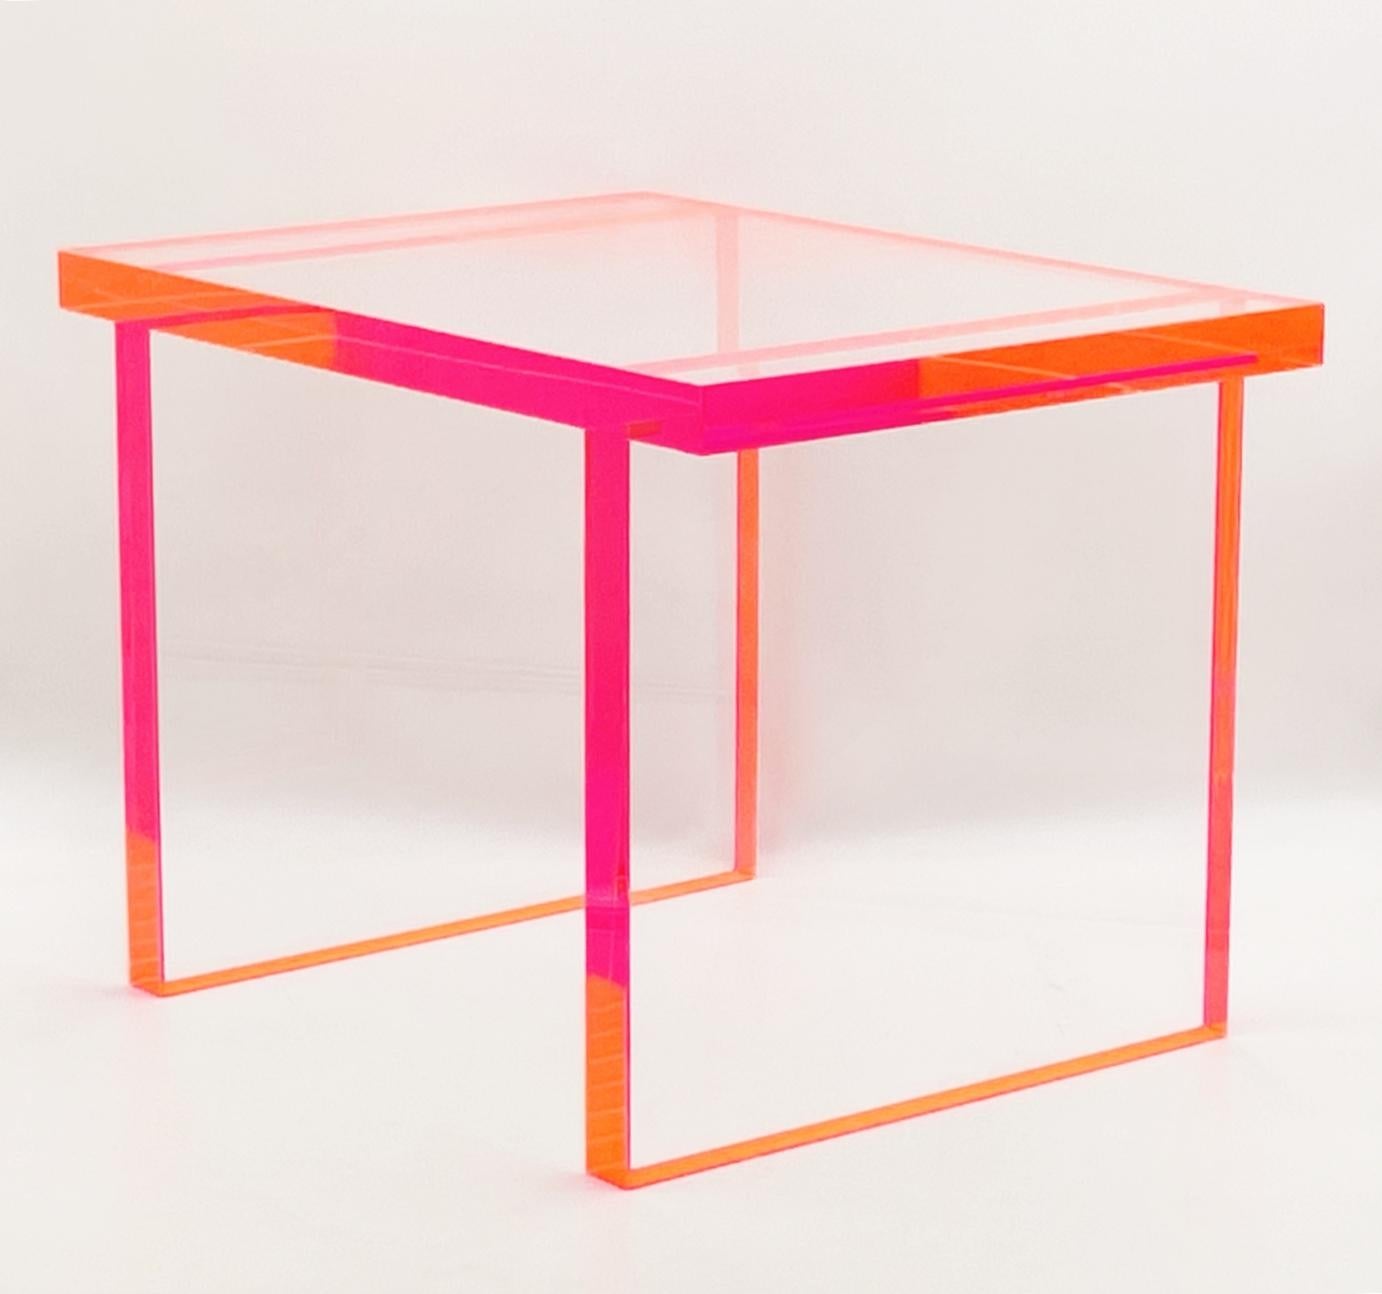 
Le banc en lucite rose fluo et transparent d'Amparo Calderon Tapia est un ajout étonnant à toute collection de meubles modernes. Avec son mélange audacieux de rose fluorescent et de Lucite transparent, ce banc est une véritable pièce d'apparat qui